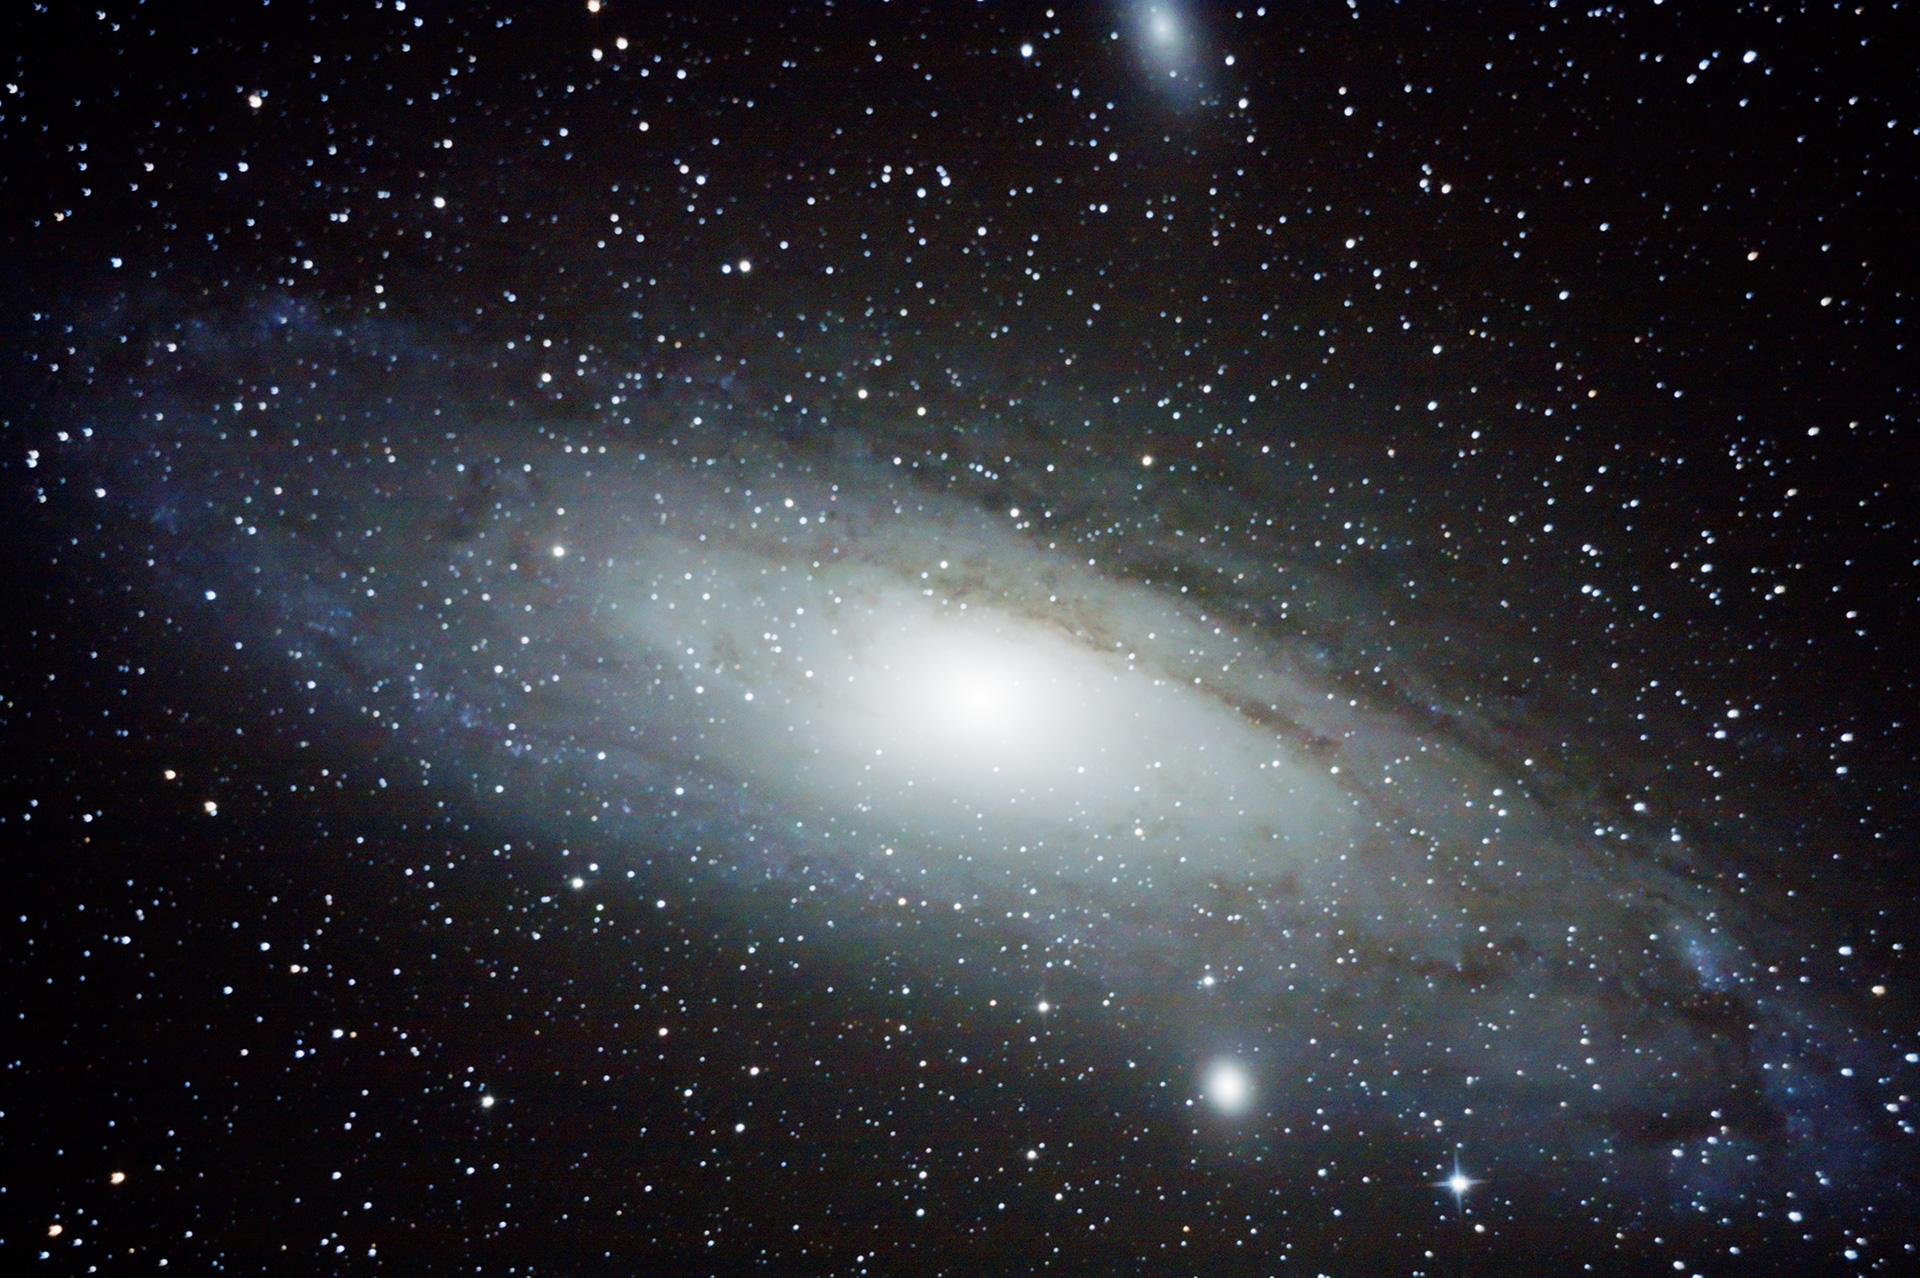 Andromeda_29.10.2014_28x60sek_ISO1600_tet.jpg